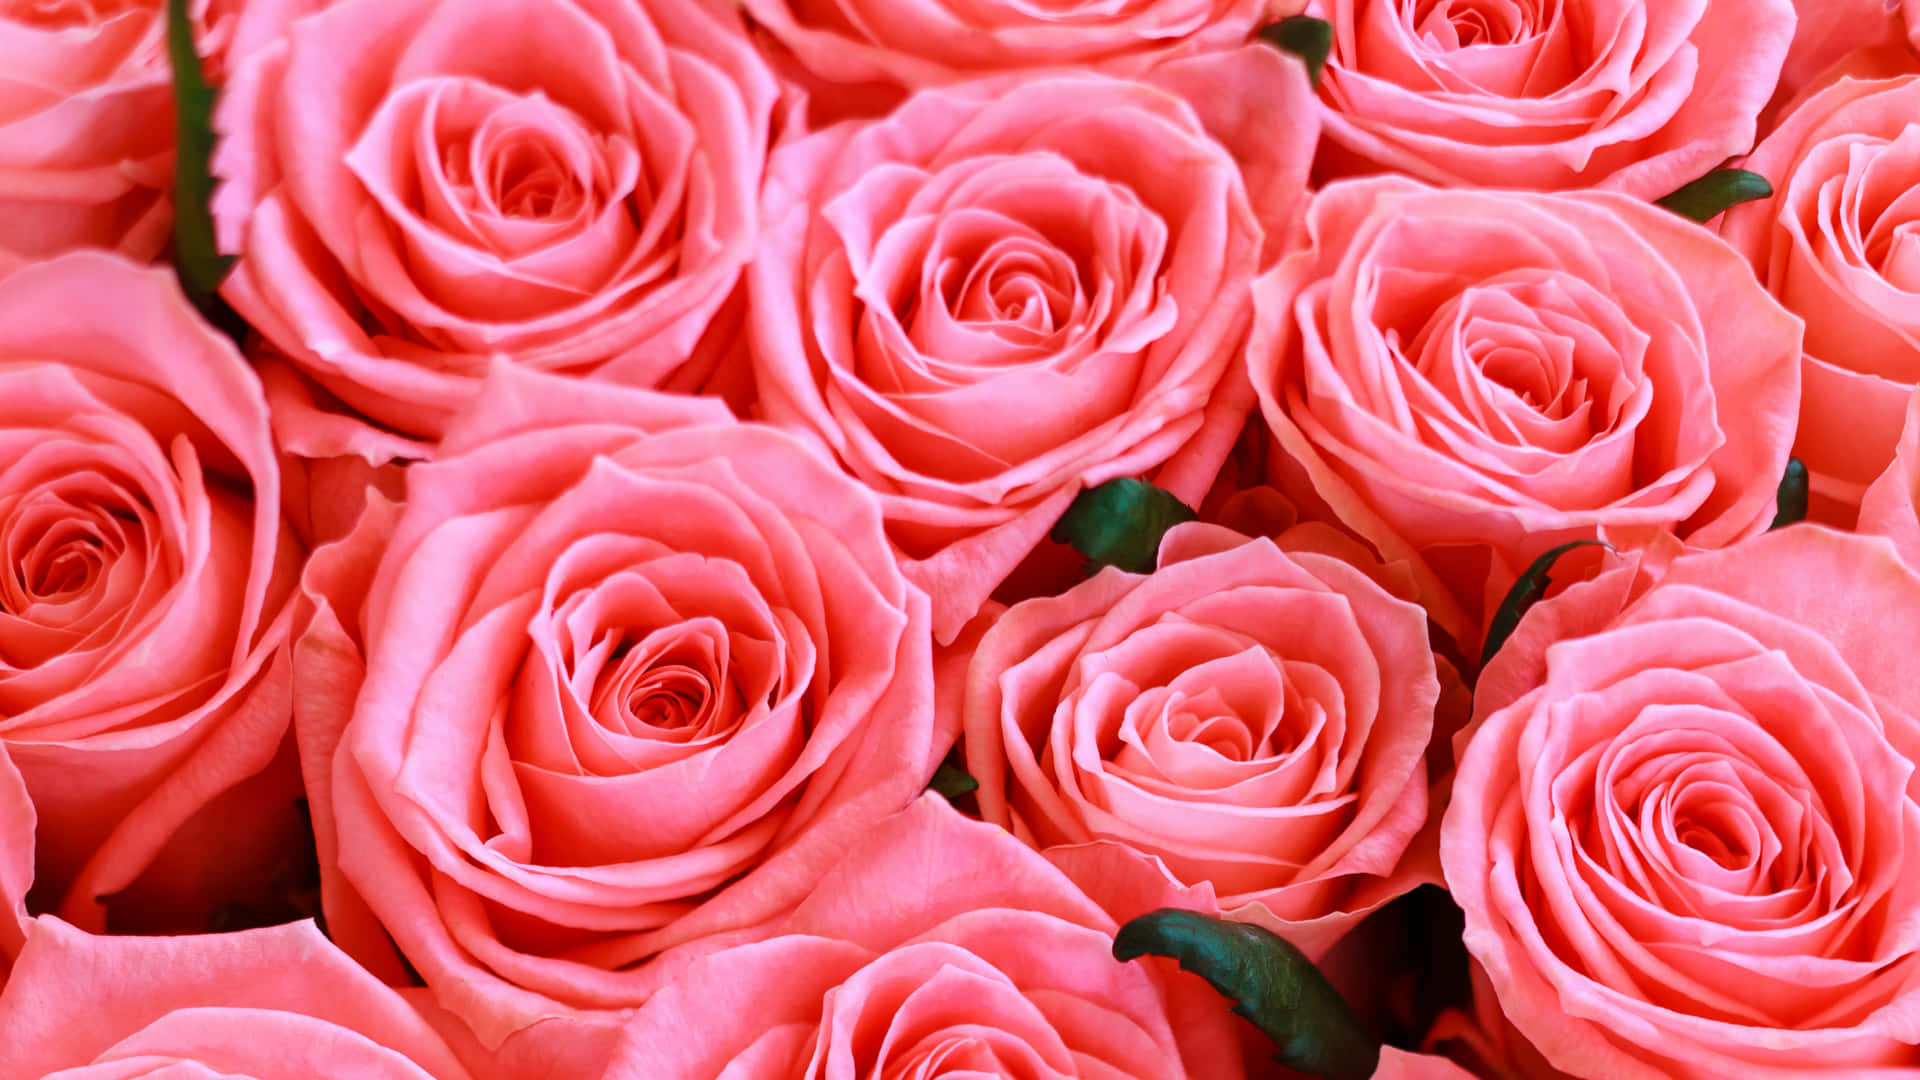 1440pplano De Fundo De Rosas Corais Em Close Up